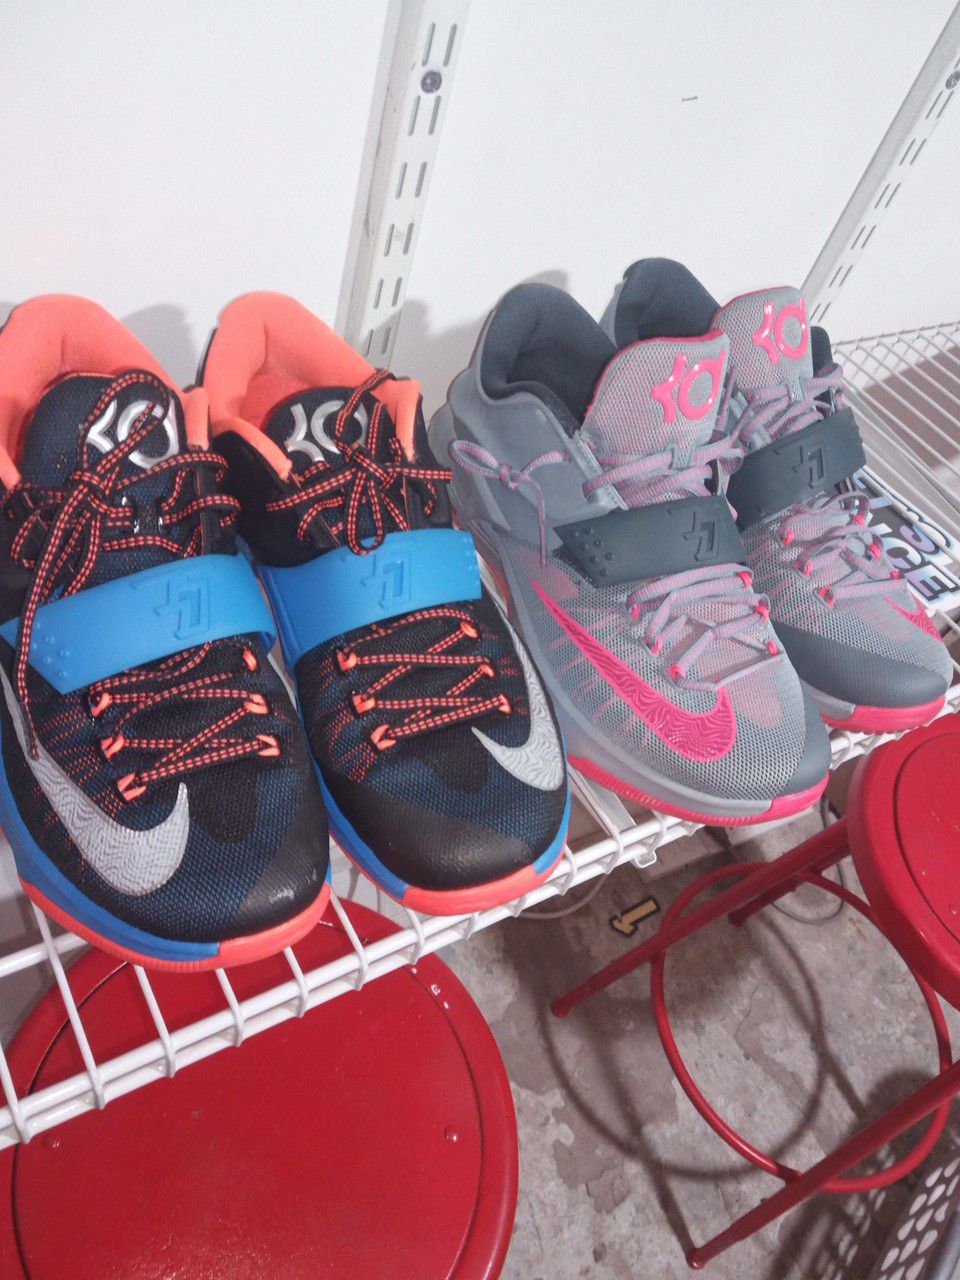 Kd shoes